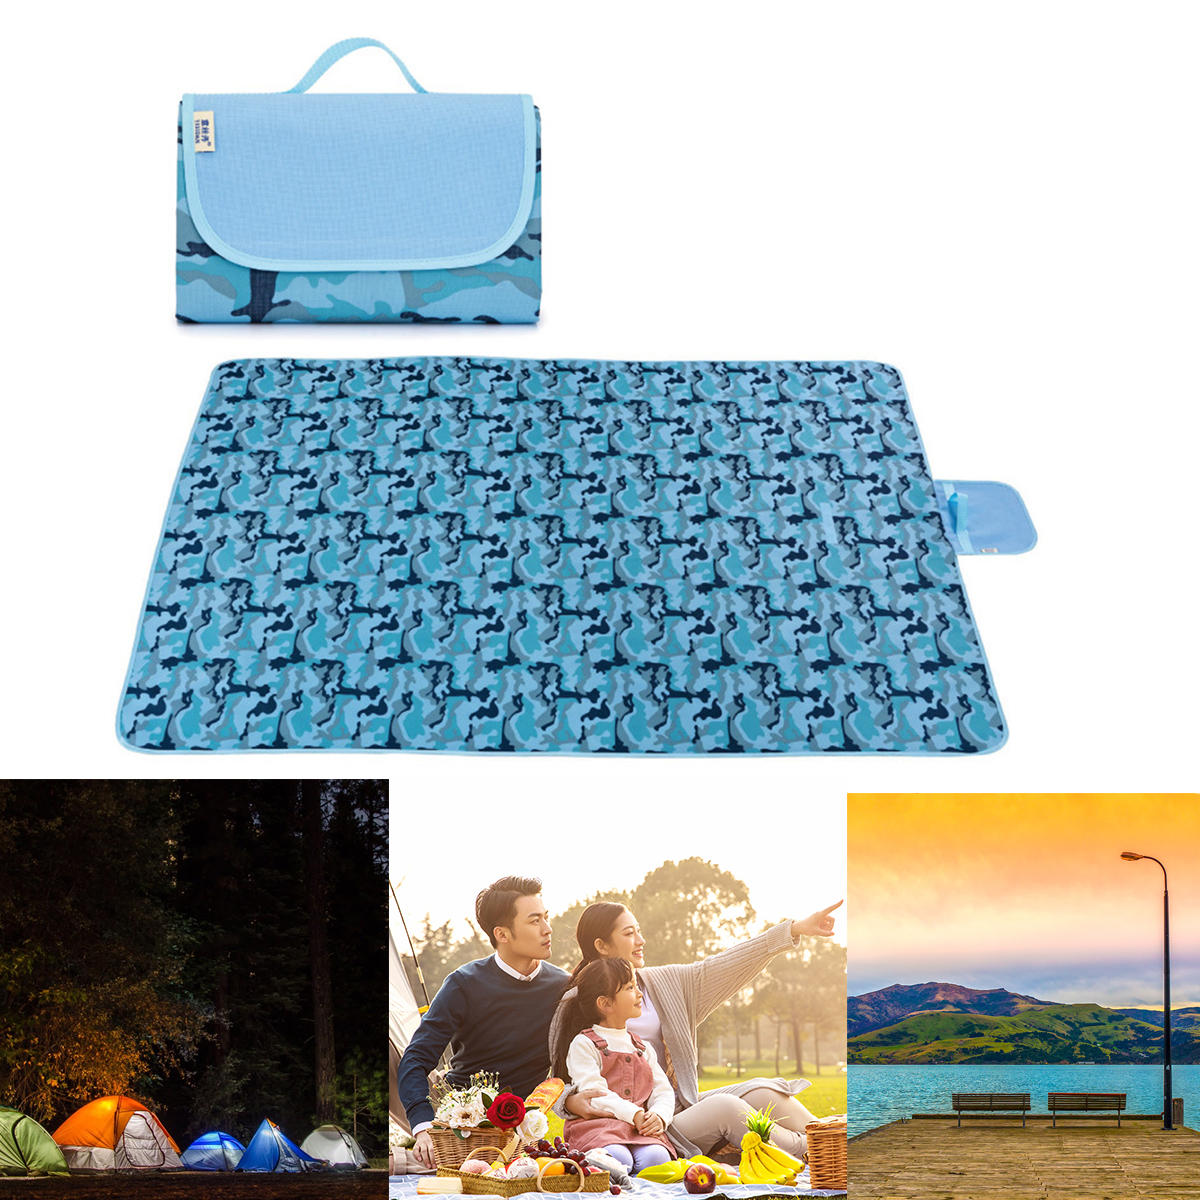 Składany mat piknikowy 145/195x200cm, wodoodporny, odporny na wilgoć, na plażę, kemping i podróże.